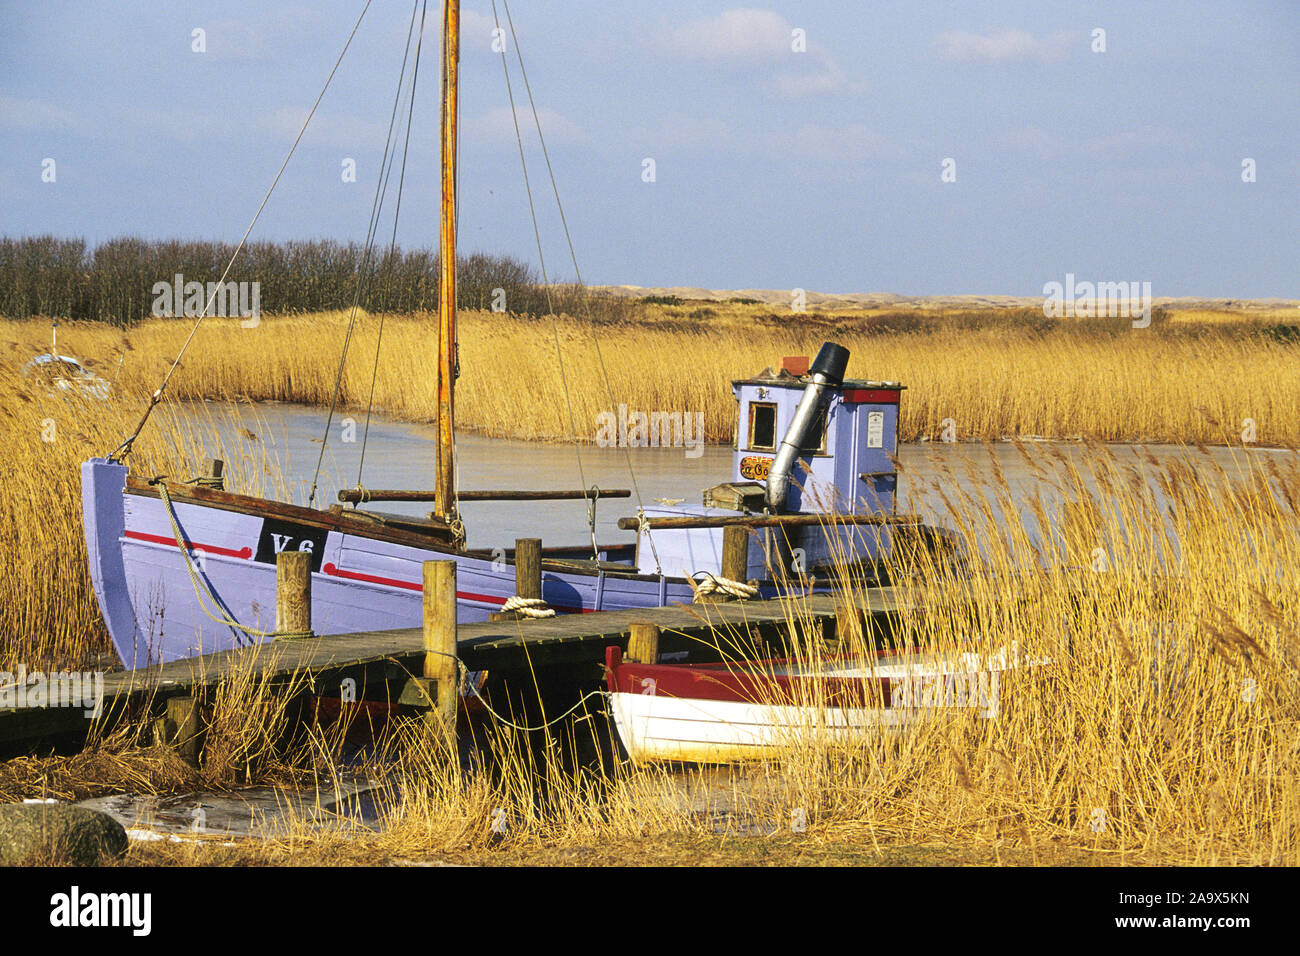 Daenemark - Typisches Fischerboot Foto Stock